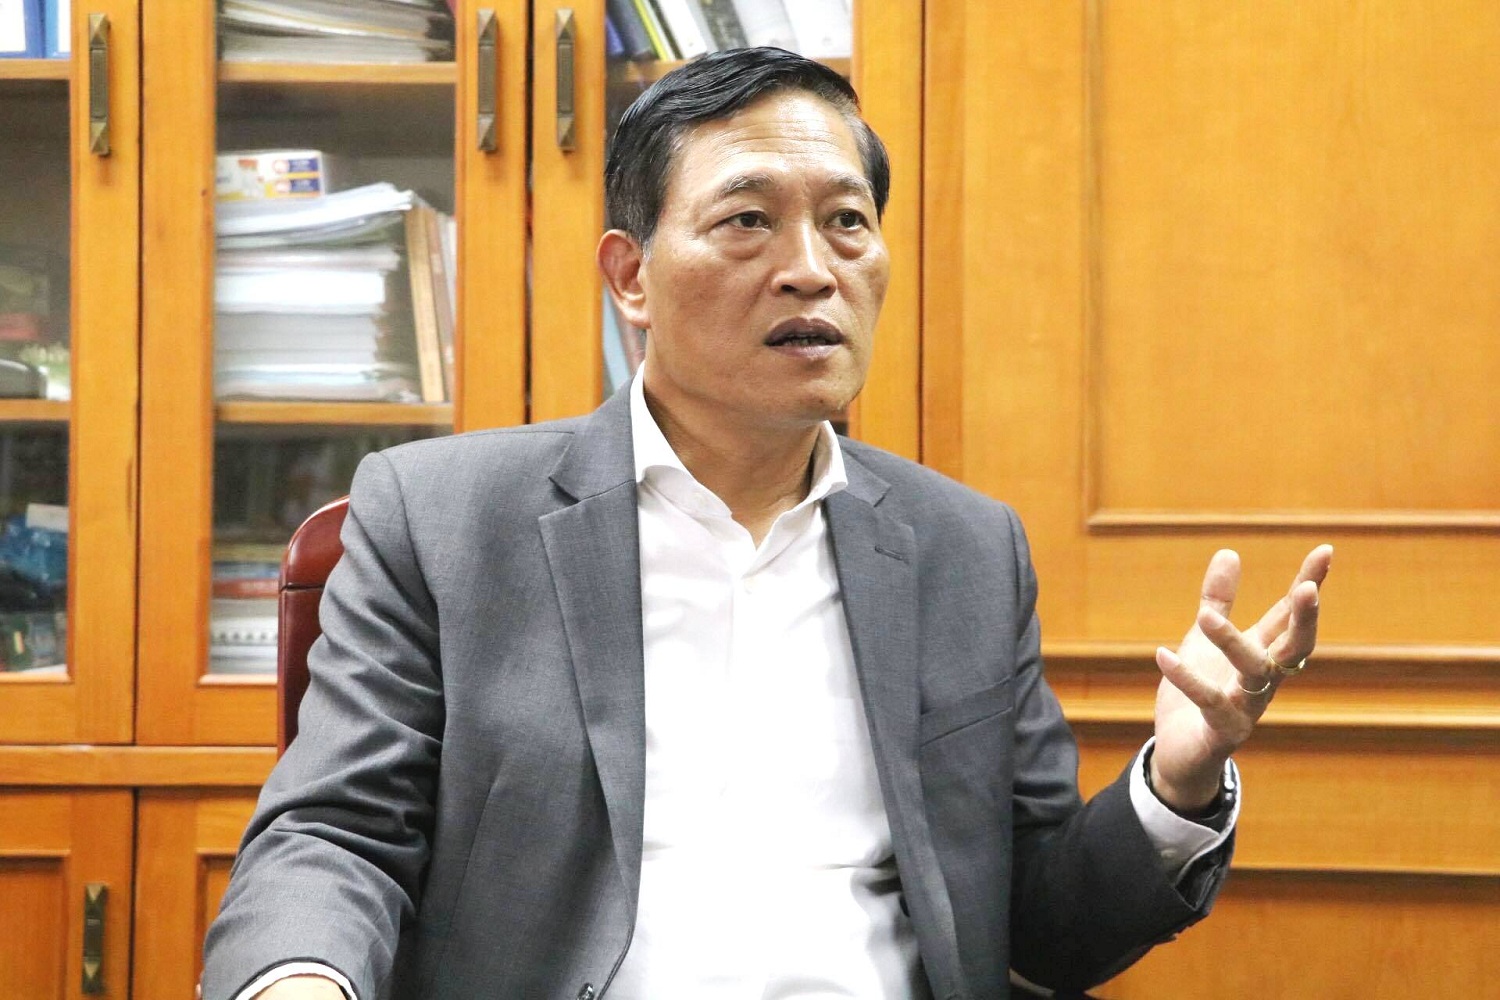 Thứ trưởng Bộ KH&CN Trần Văn Tùng trong trả lời phỏng vấn của Chất lượng Việt Nam (VietQ.vn)